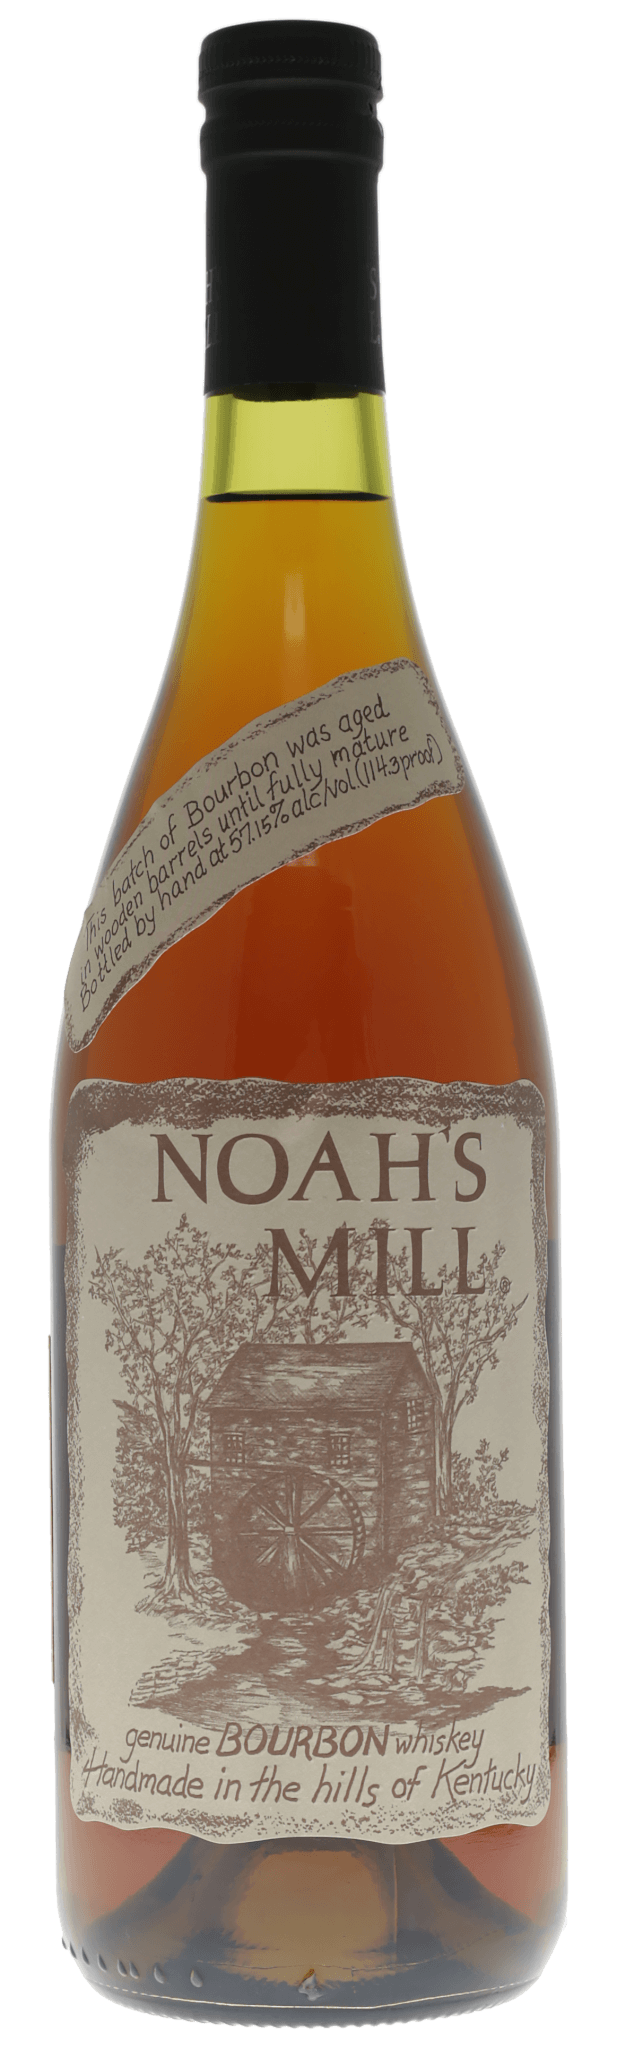 Willett Noah’s Mill Small Batch Kentucky Bourbon Whiskey